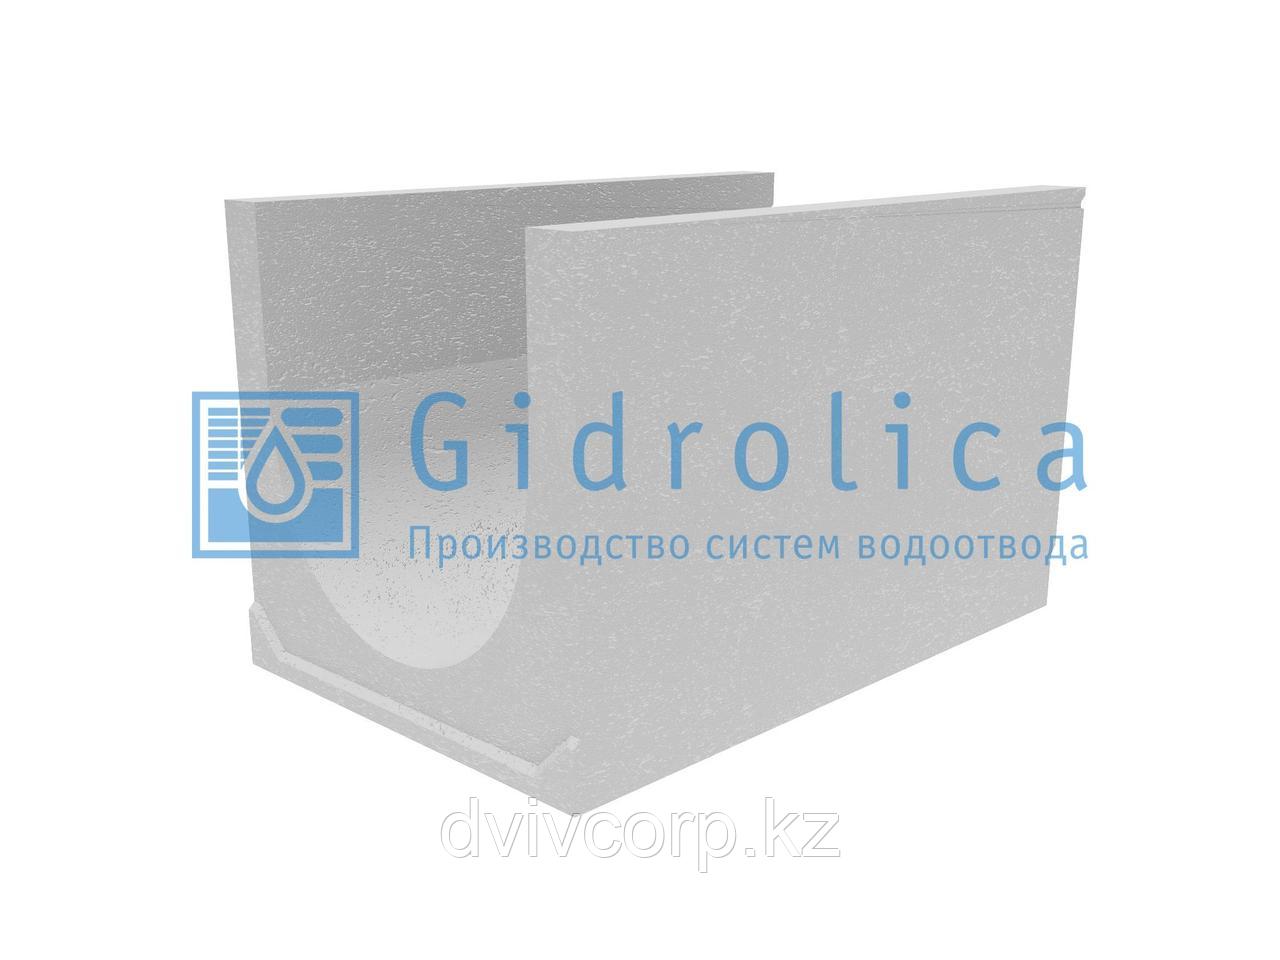 Лоток водоотводный бетонный коробчатый (СО-500мм), с уклоном 0,5%  КUу 100.65(50).64(55) - BGU-XL, № 38